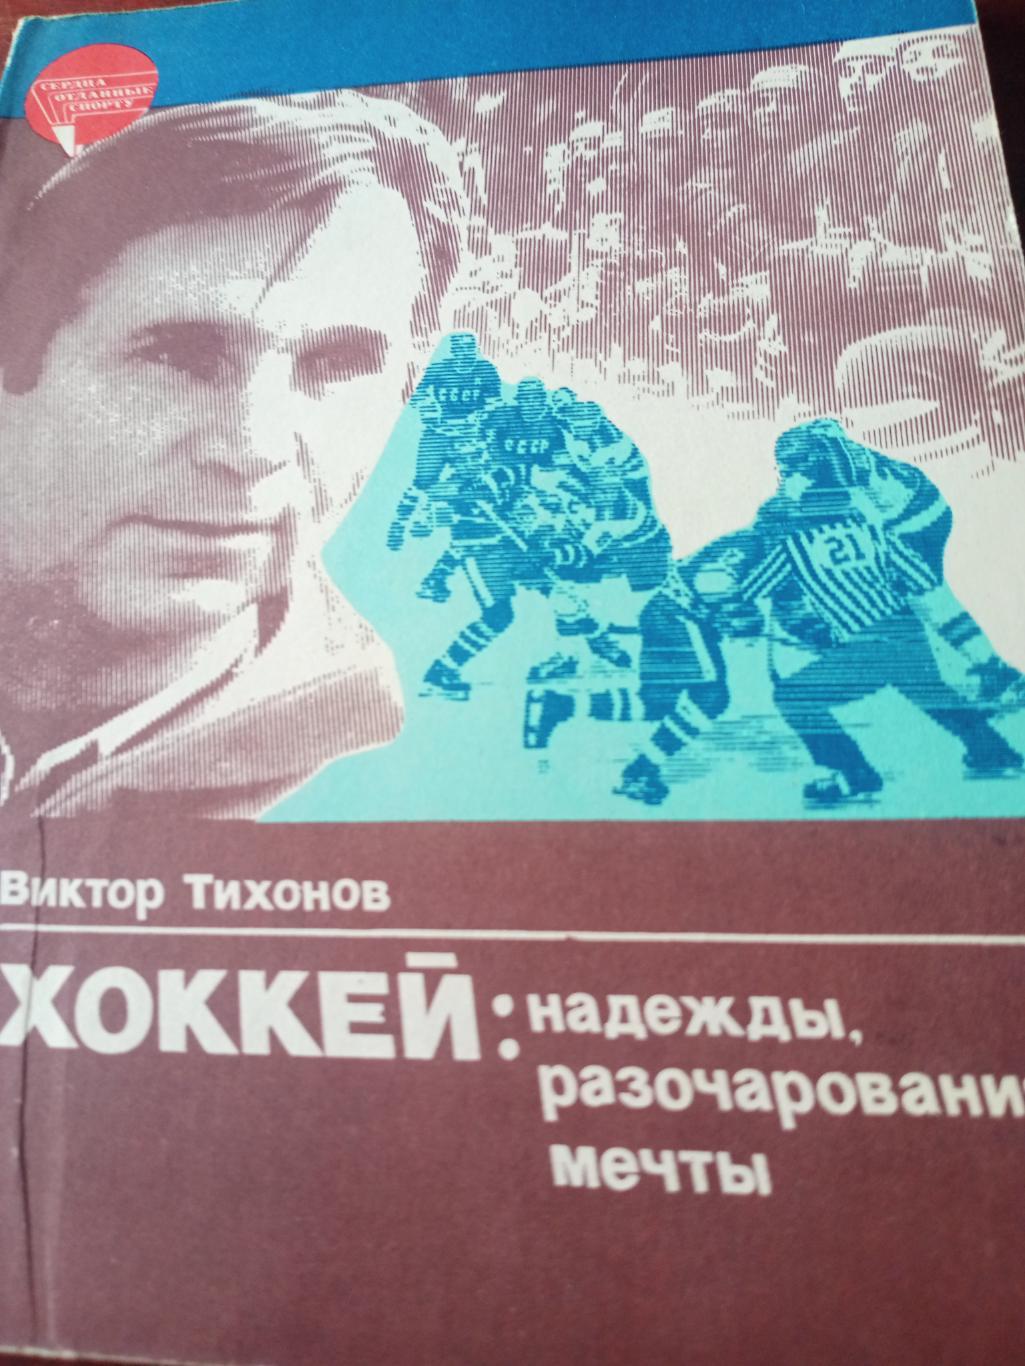 Виктор Тихонов. Хоккей: Надежды, Разочарования, Мечты. Москва (ФиС, 1985)